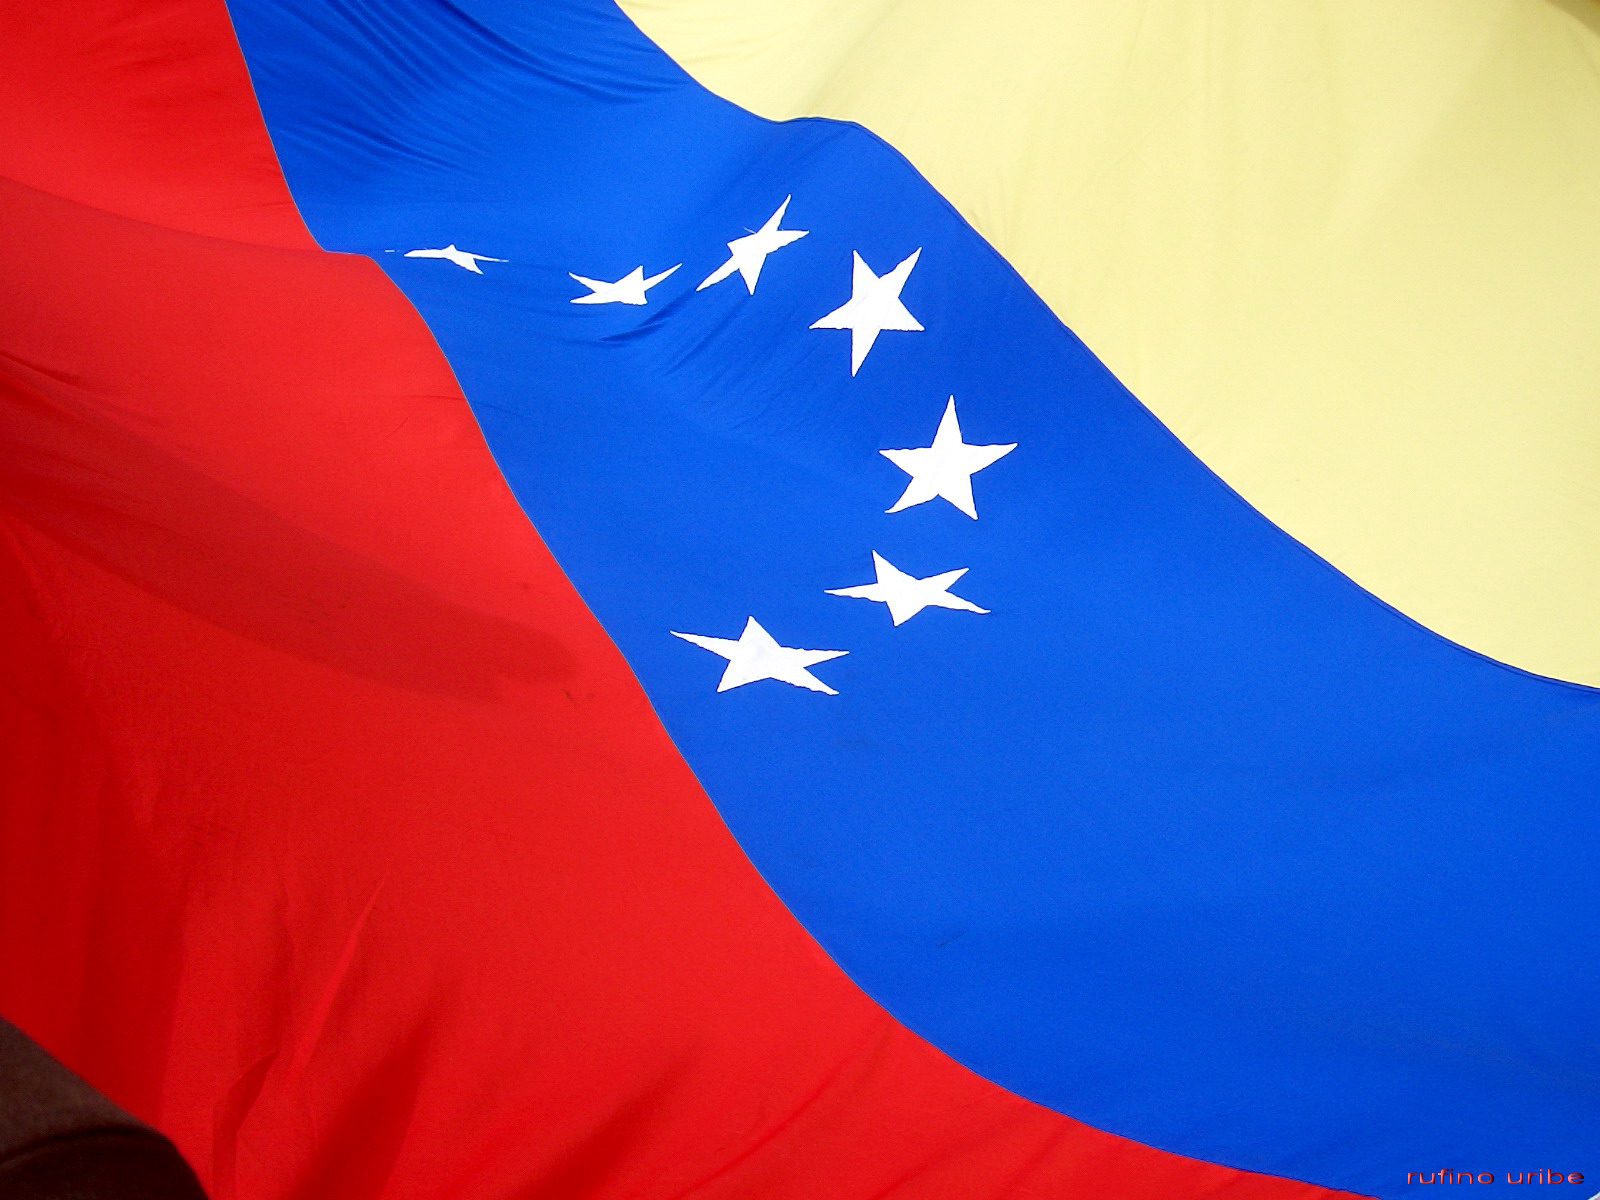 Segnali di distensione tra Governo e opposizione venezuelana